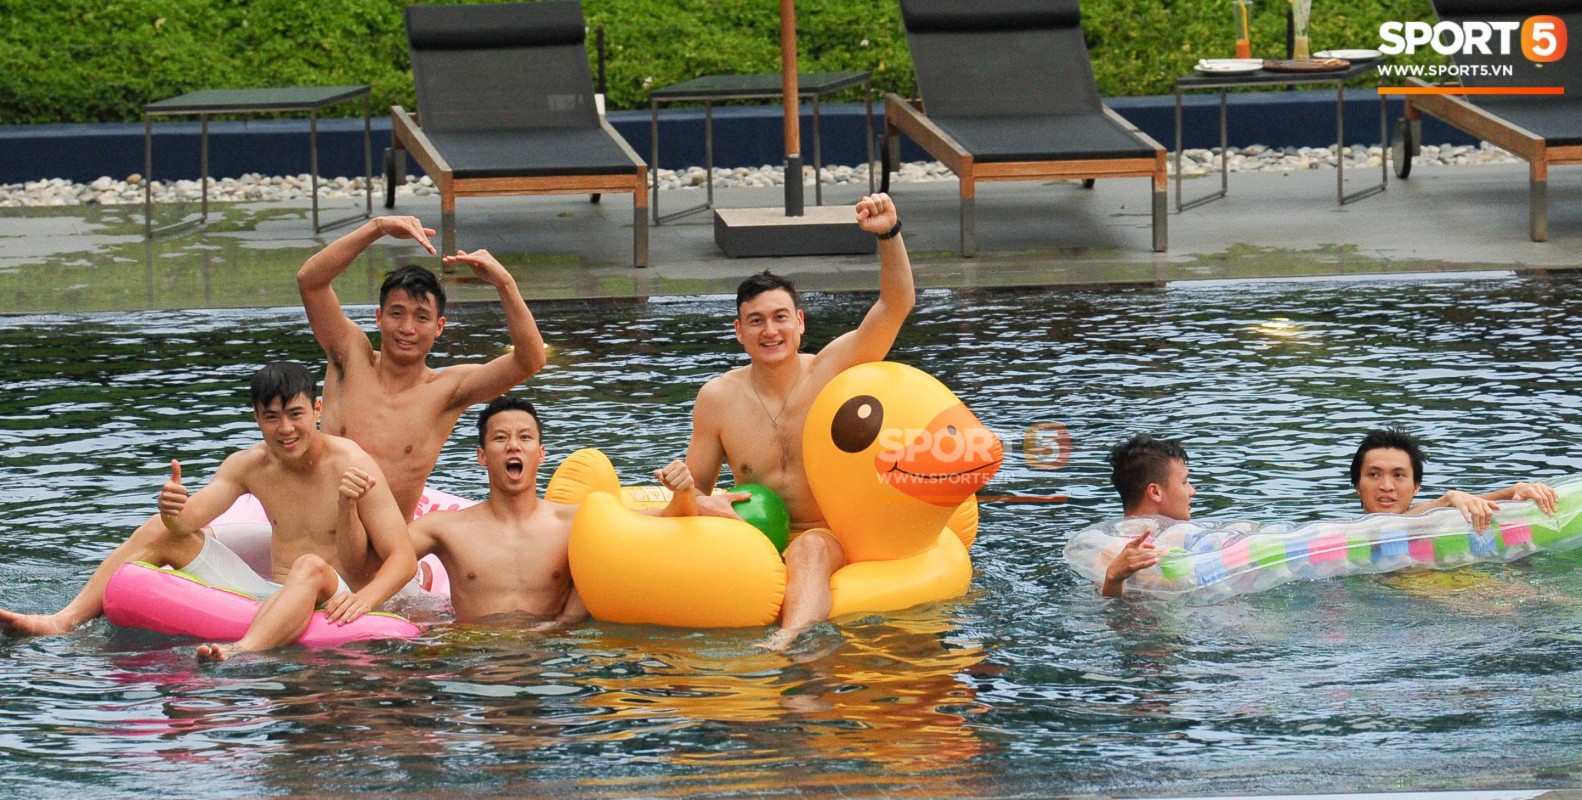 Dàn tuyển thủ Việt Nam thoải mái tươi cười trên hồ bơi trước thềm trận chung kết Kings Cup 2019 - Ảnh 2.